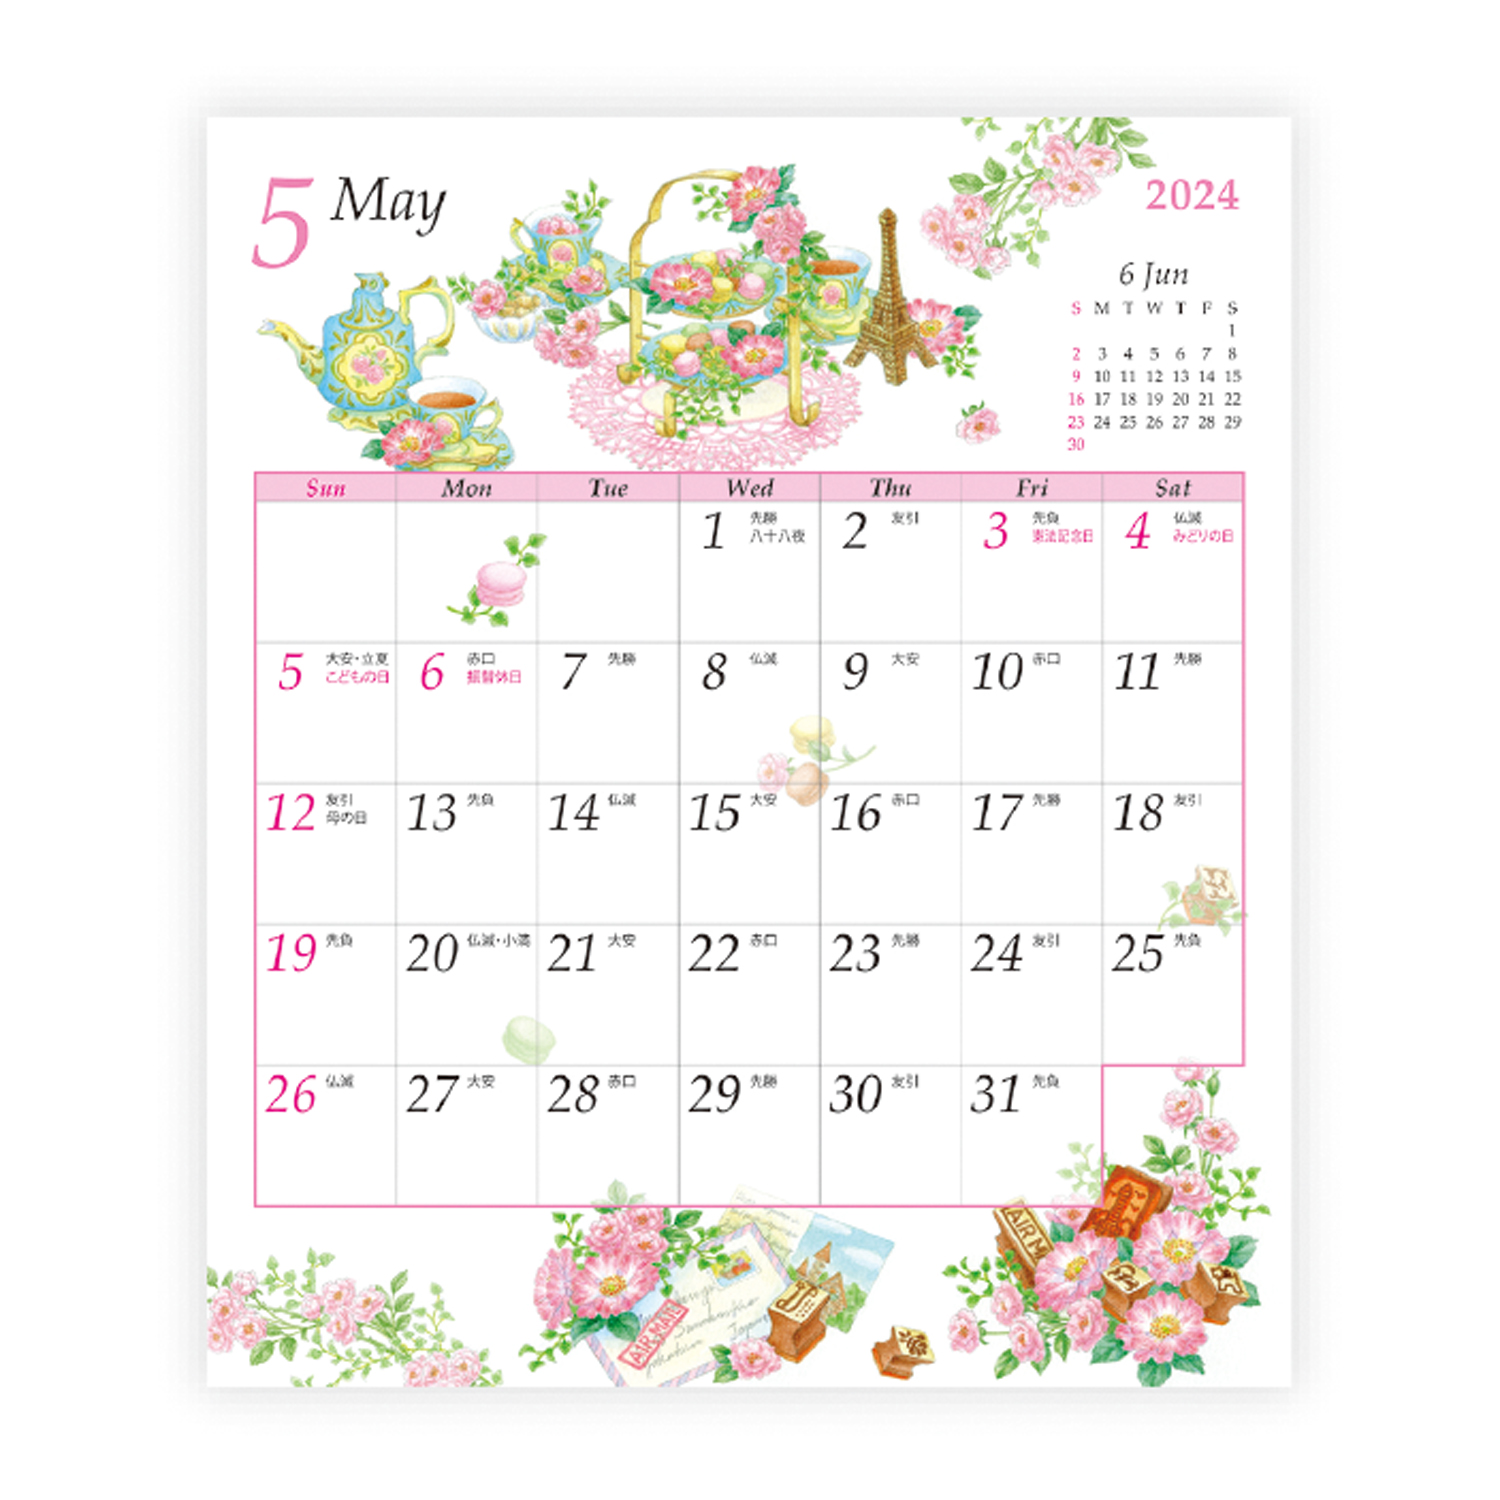 ガーデンカレンダー